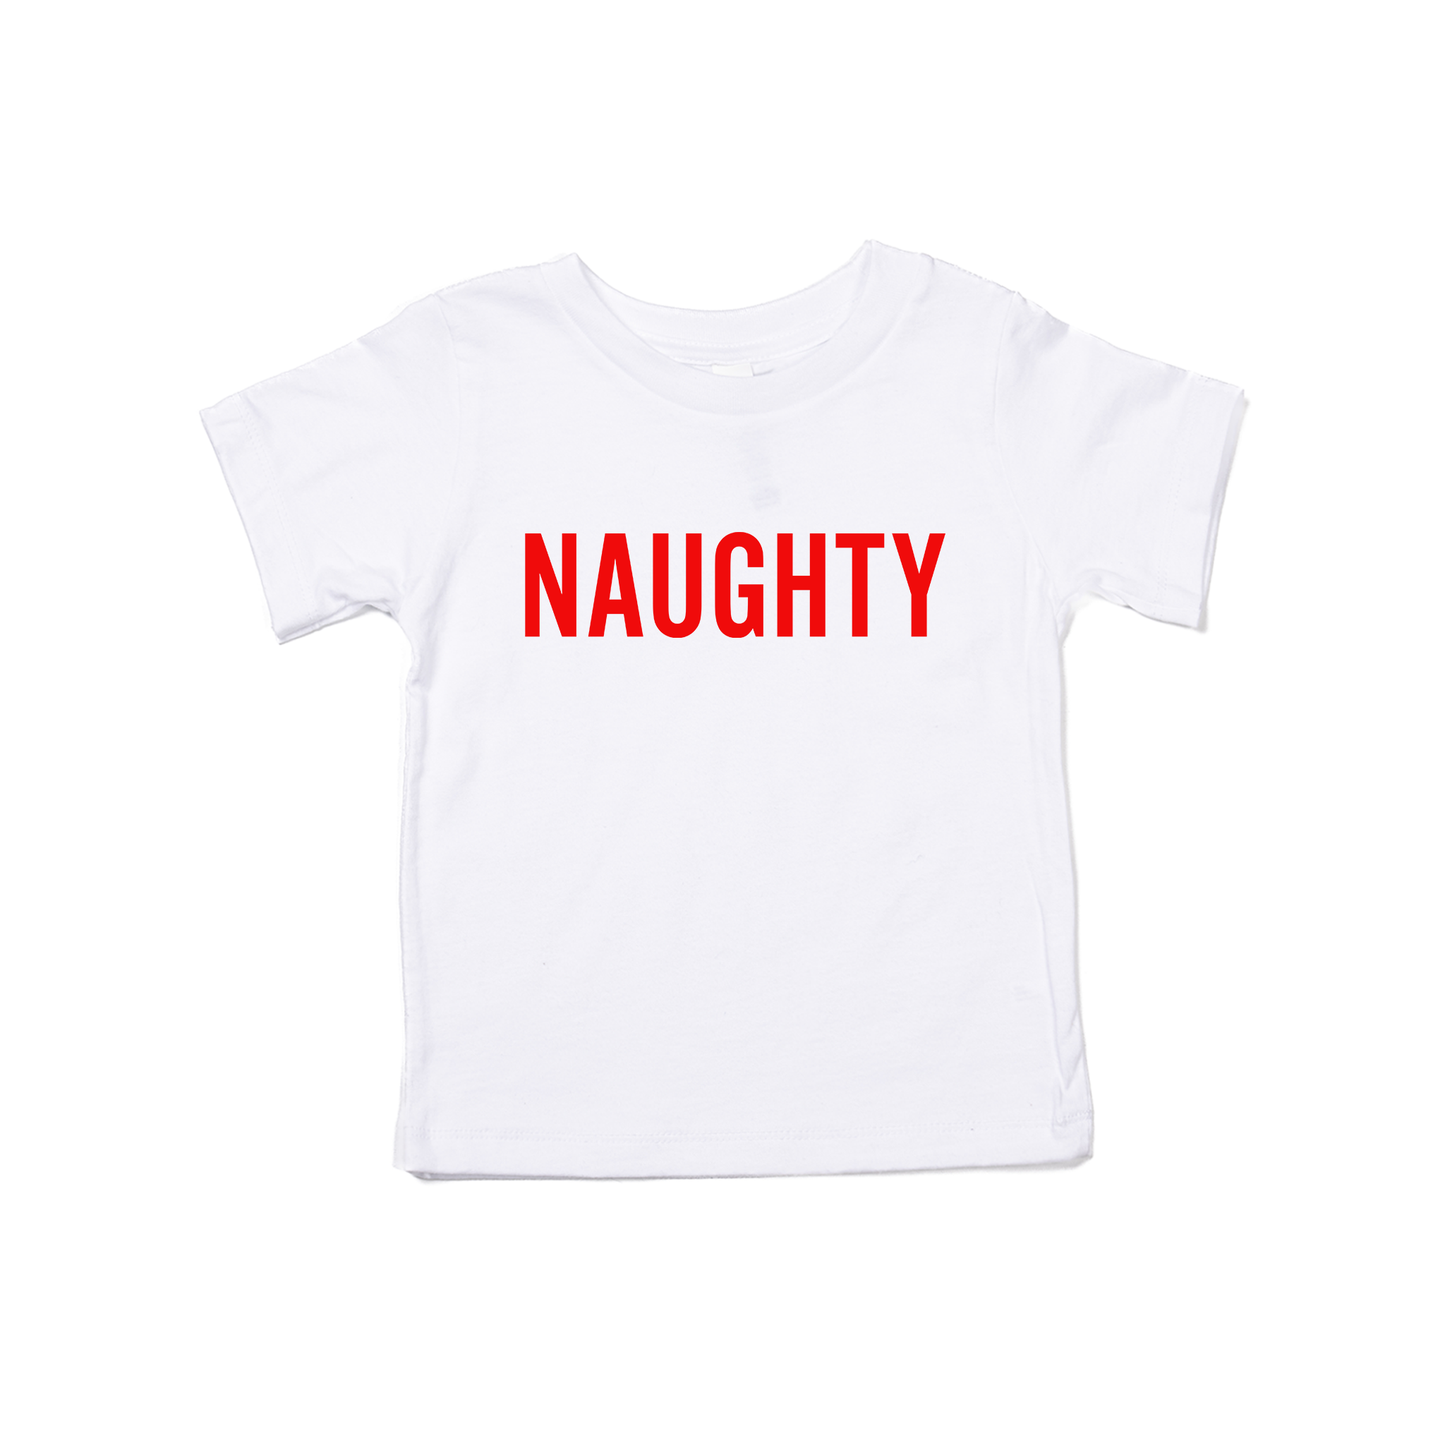 Naughty (Version 2, Red) - Kids Tee (White)